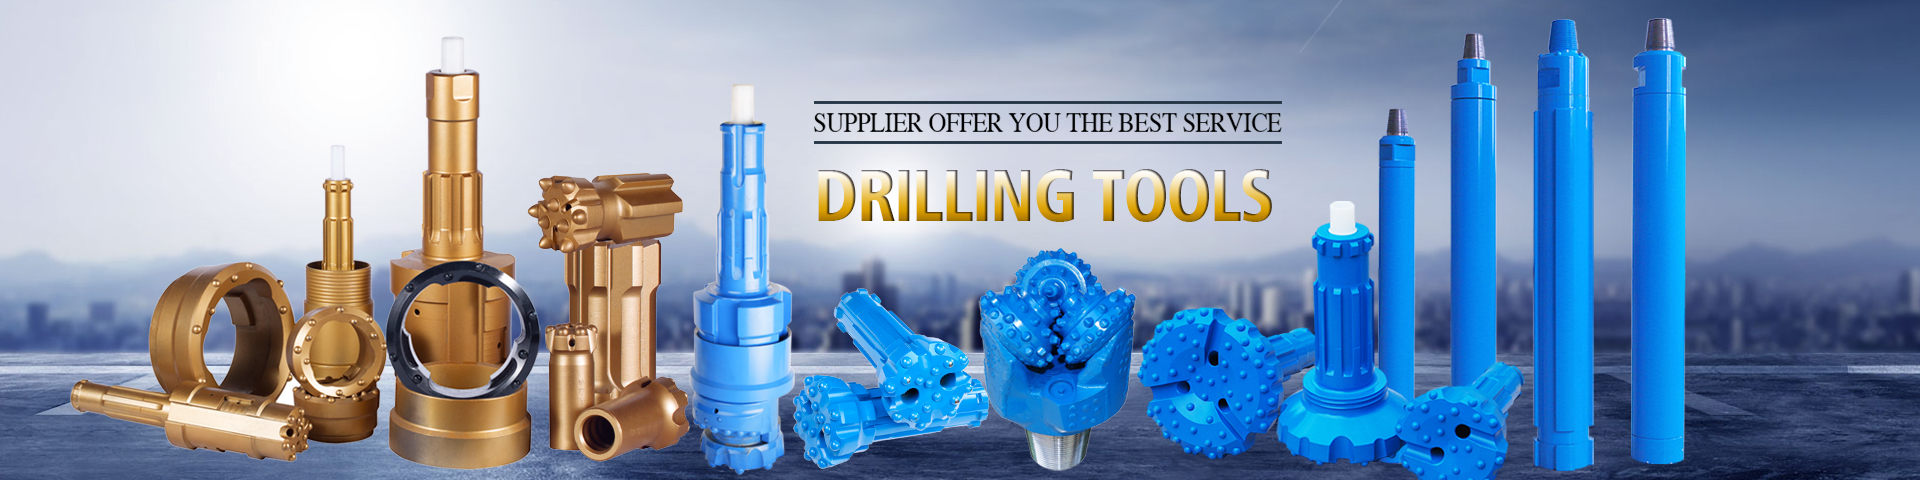 drilling tools -1